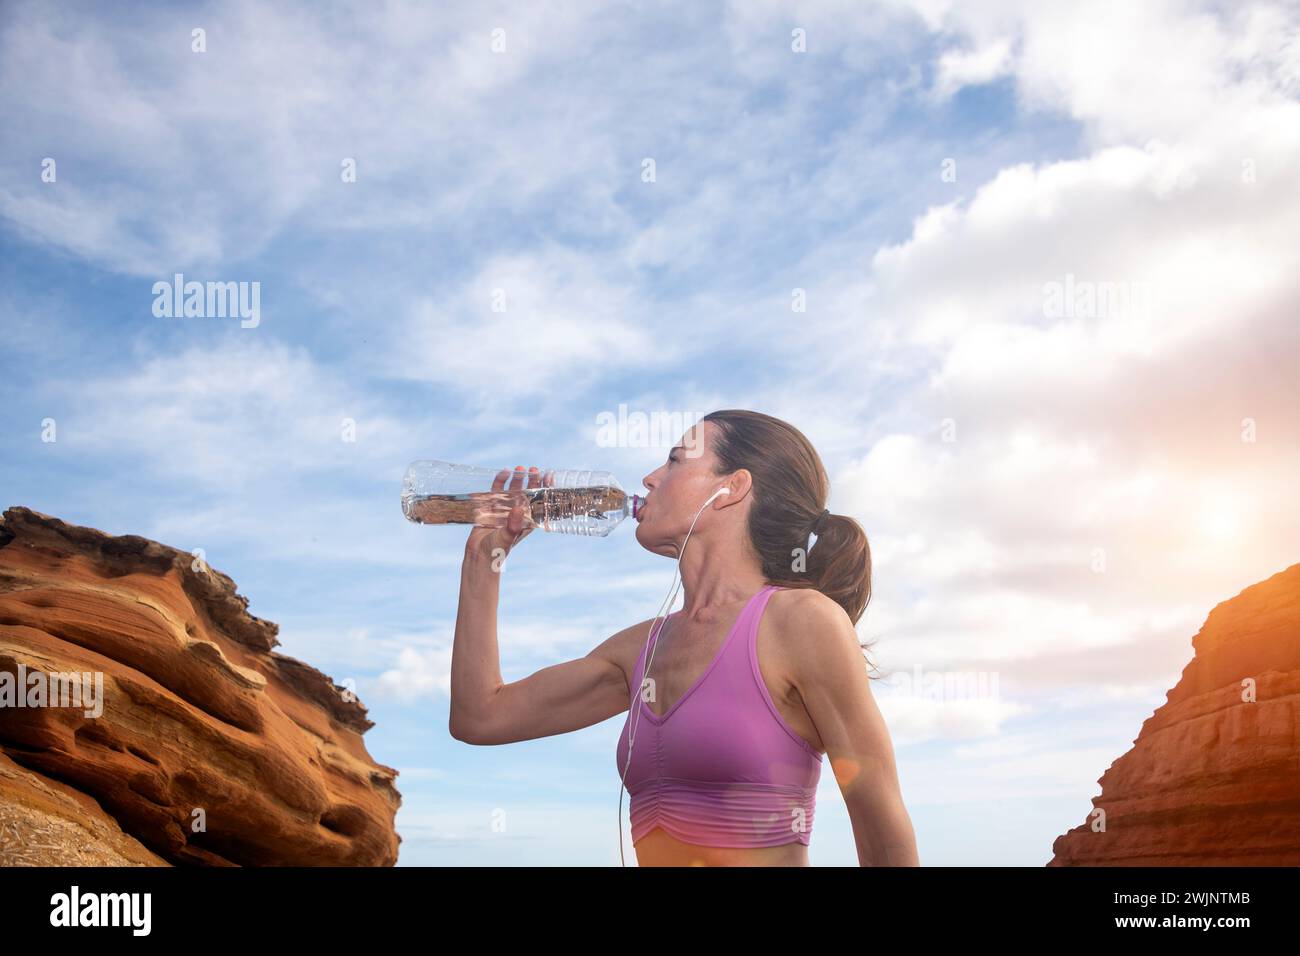 mujer deportiva bebiendo agua de una botella, sedienta después del ejercicio. Foto de stock